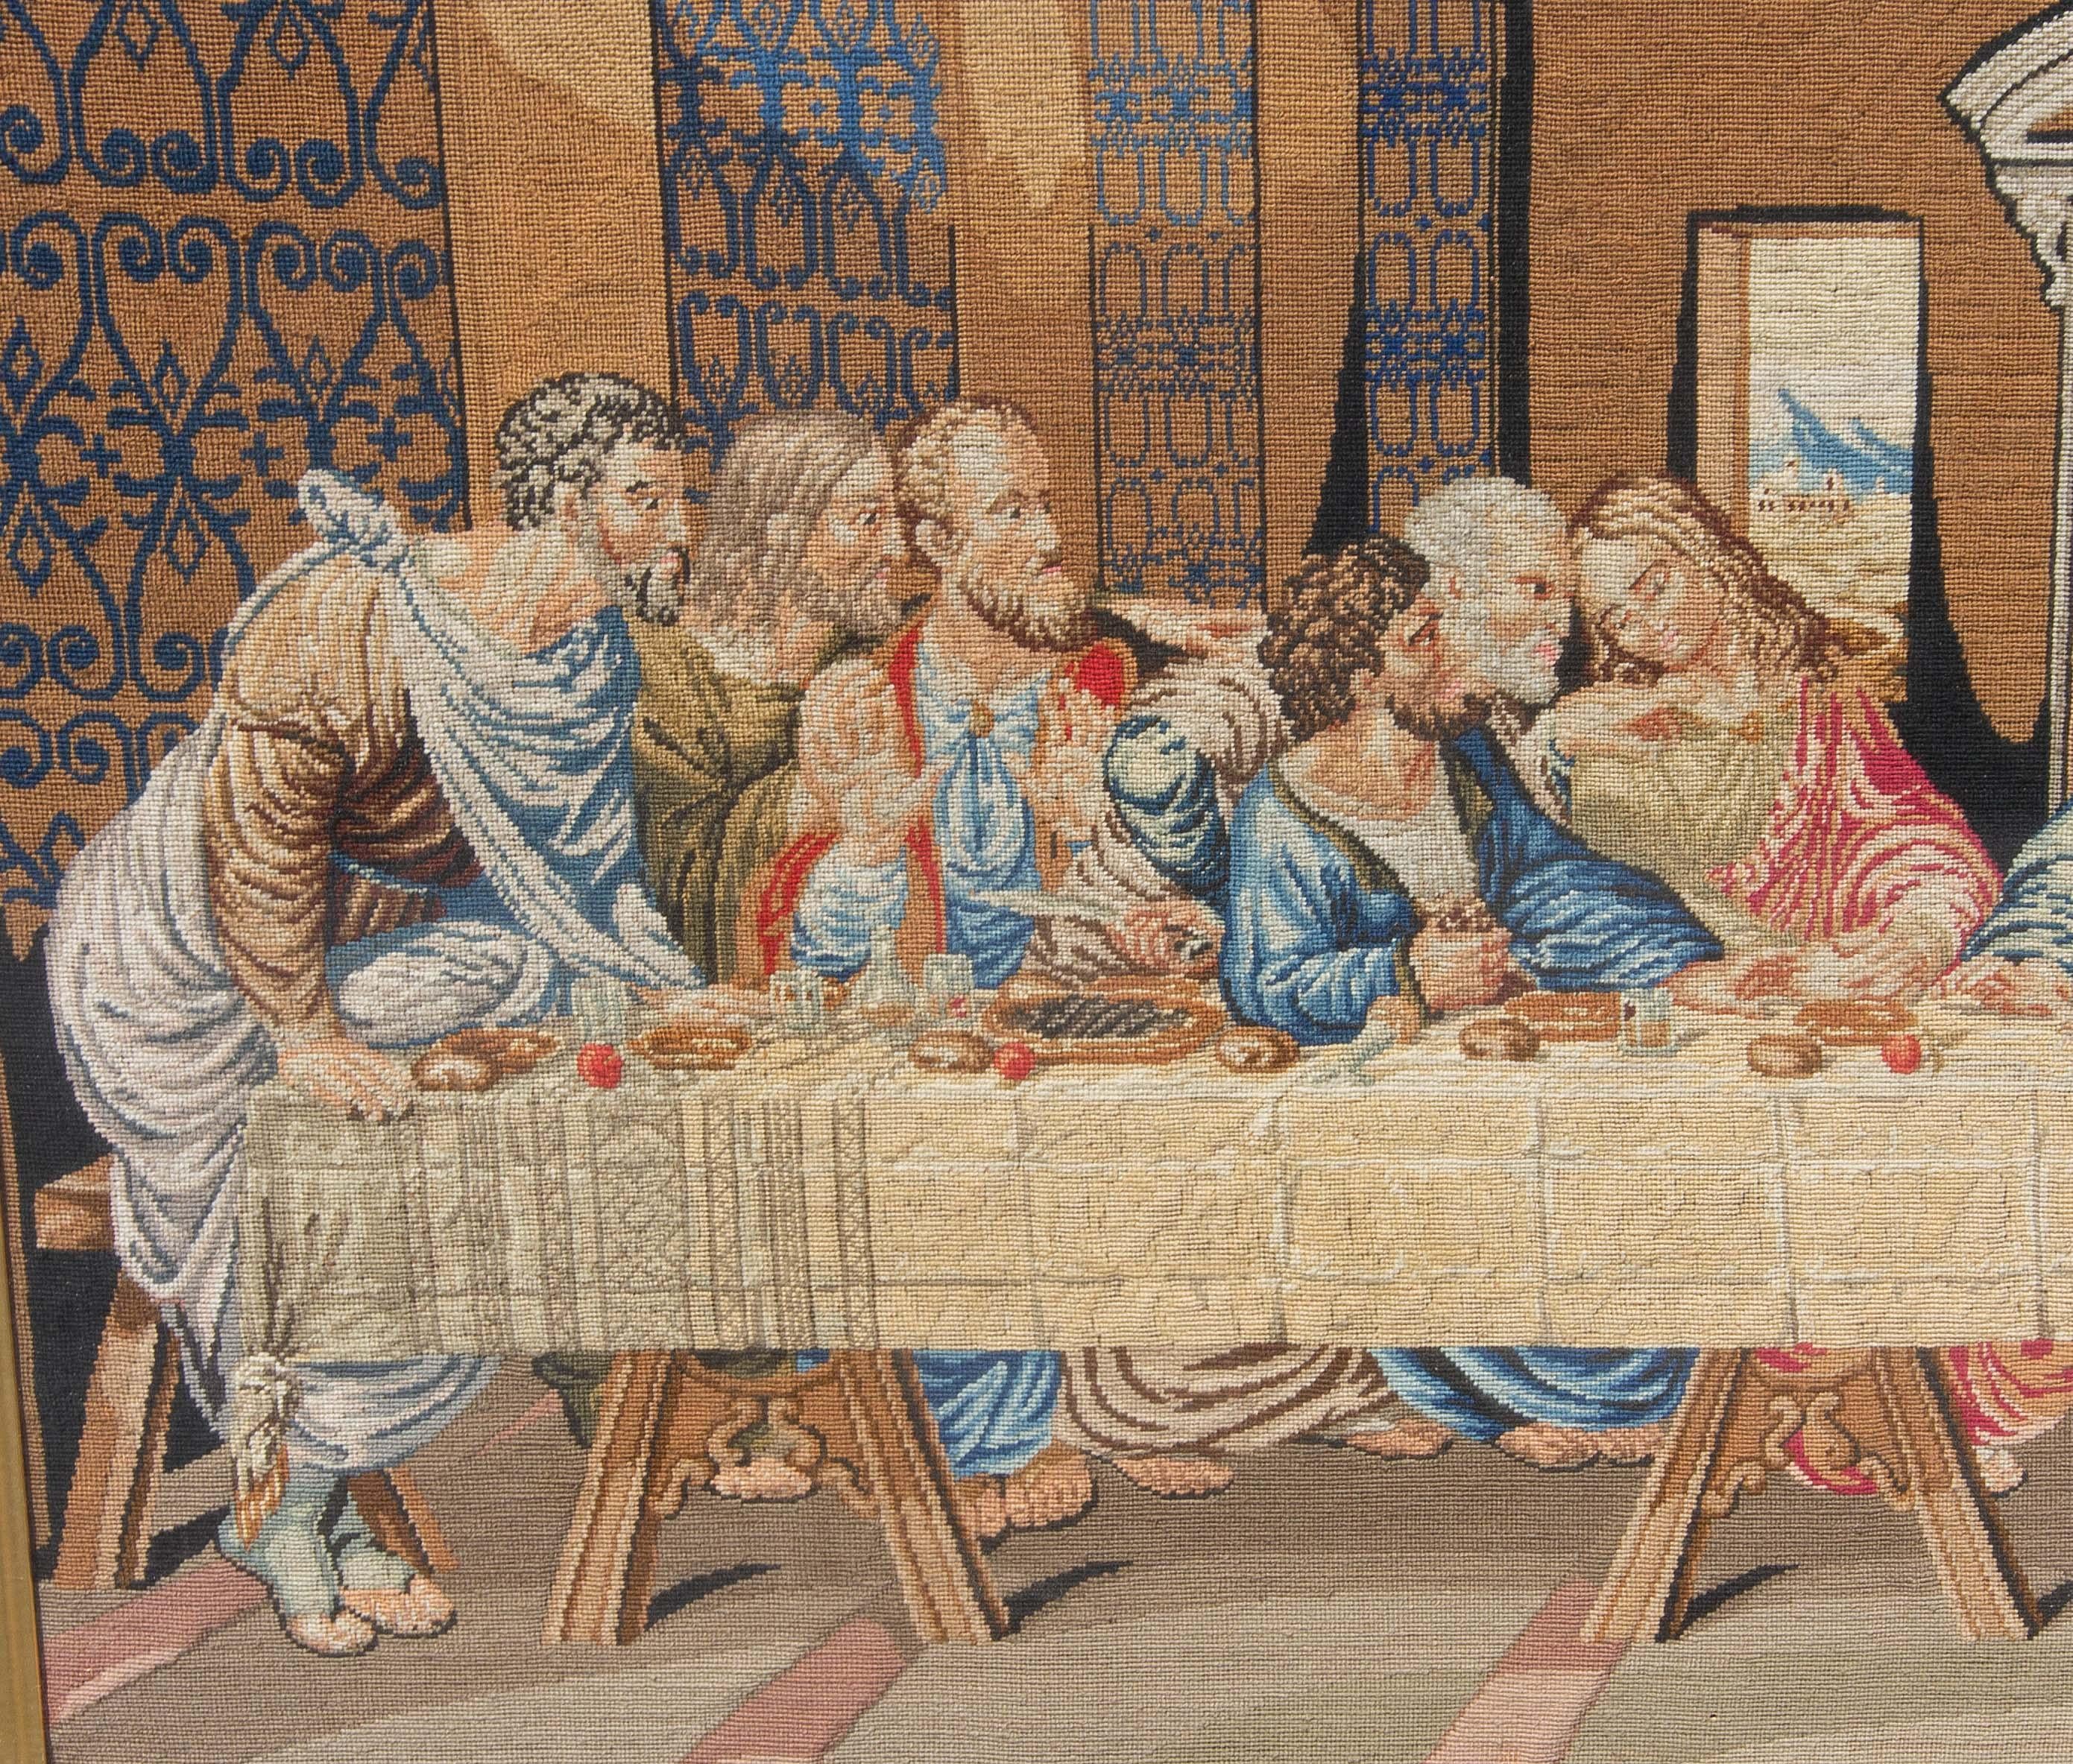 Hand-Woven Antique Aubusson Tapestry the Last Supper After Leonardo Da Vinci Circa 1850